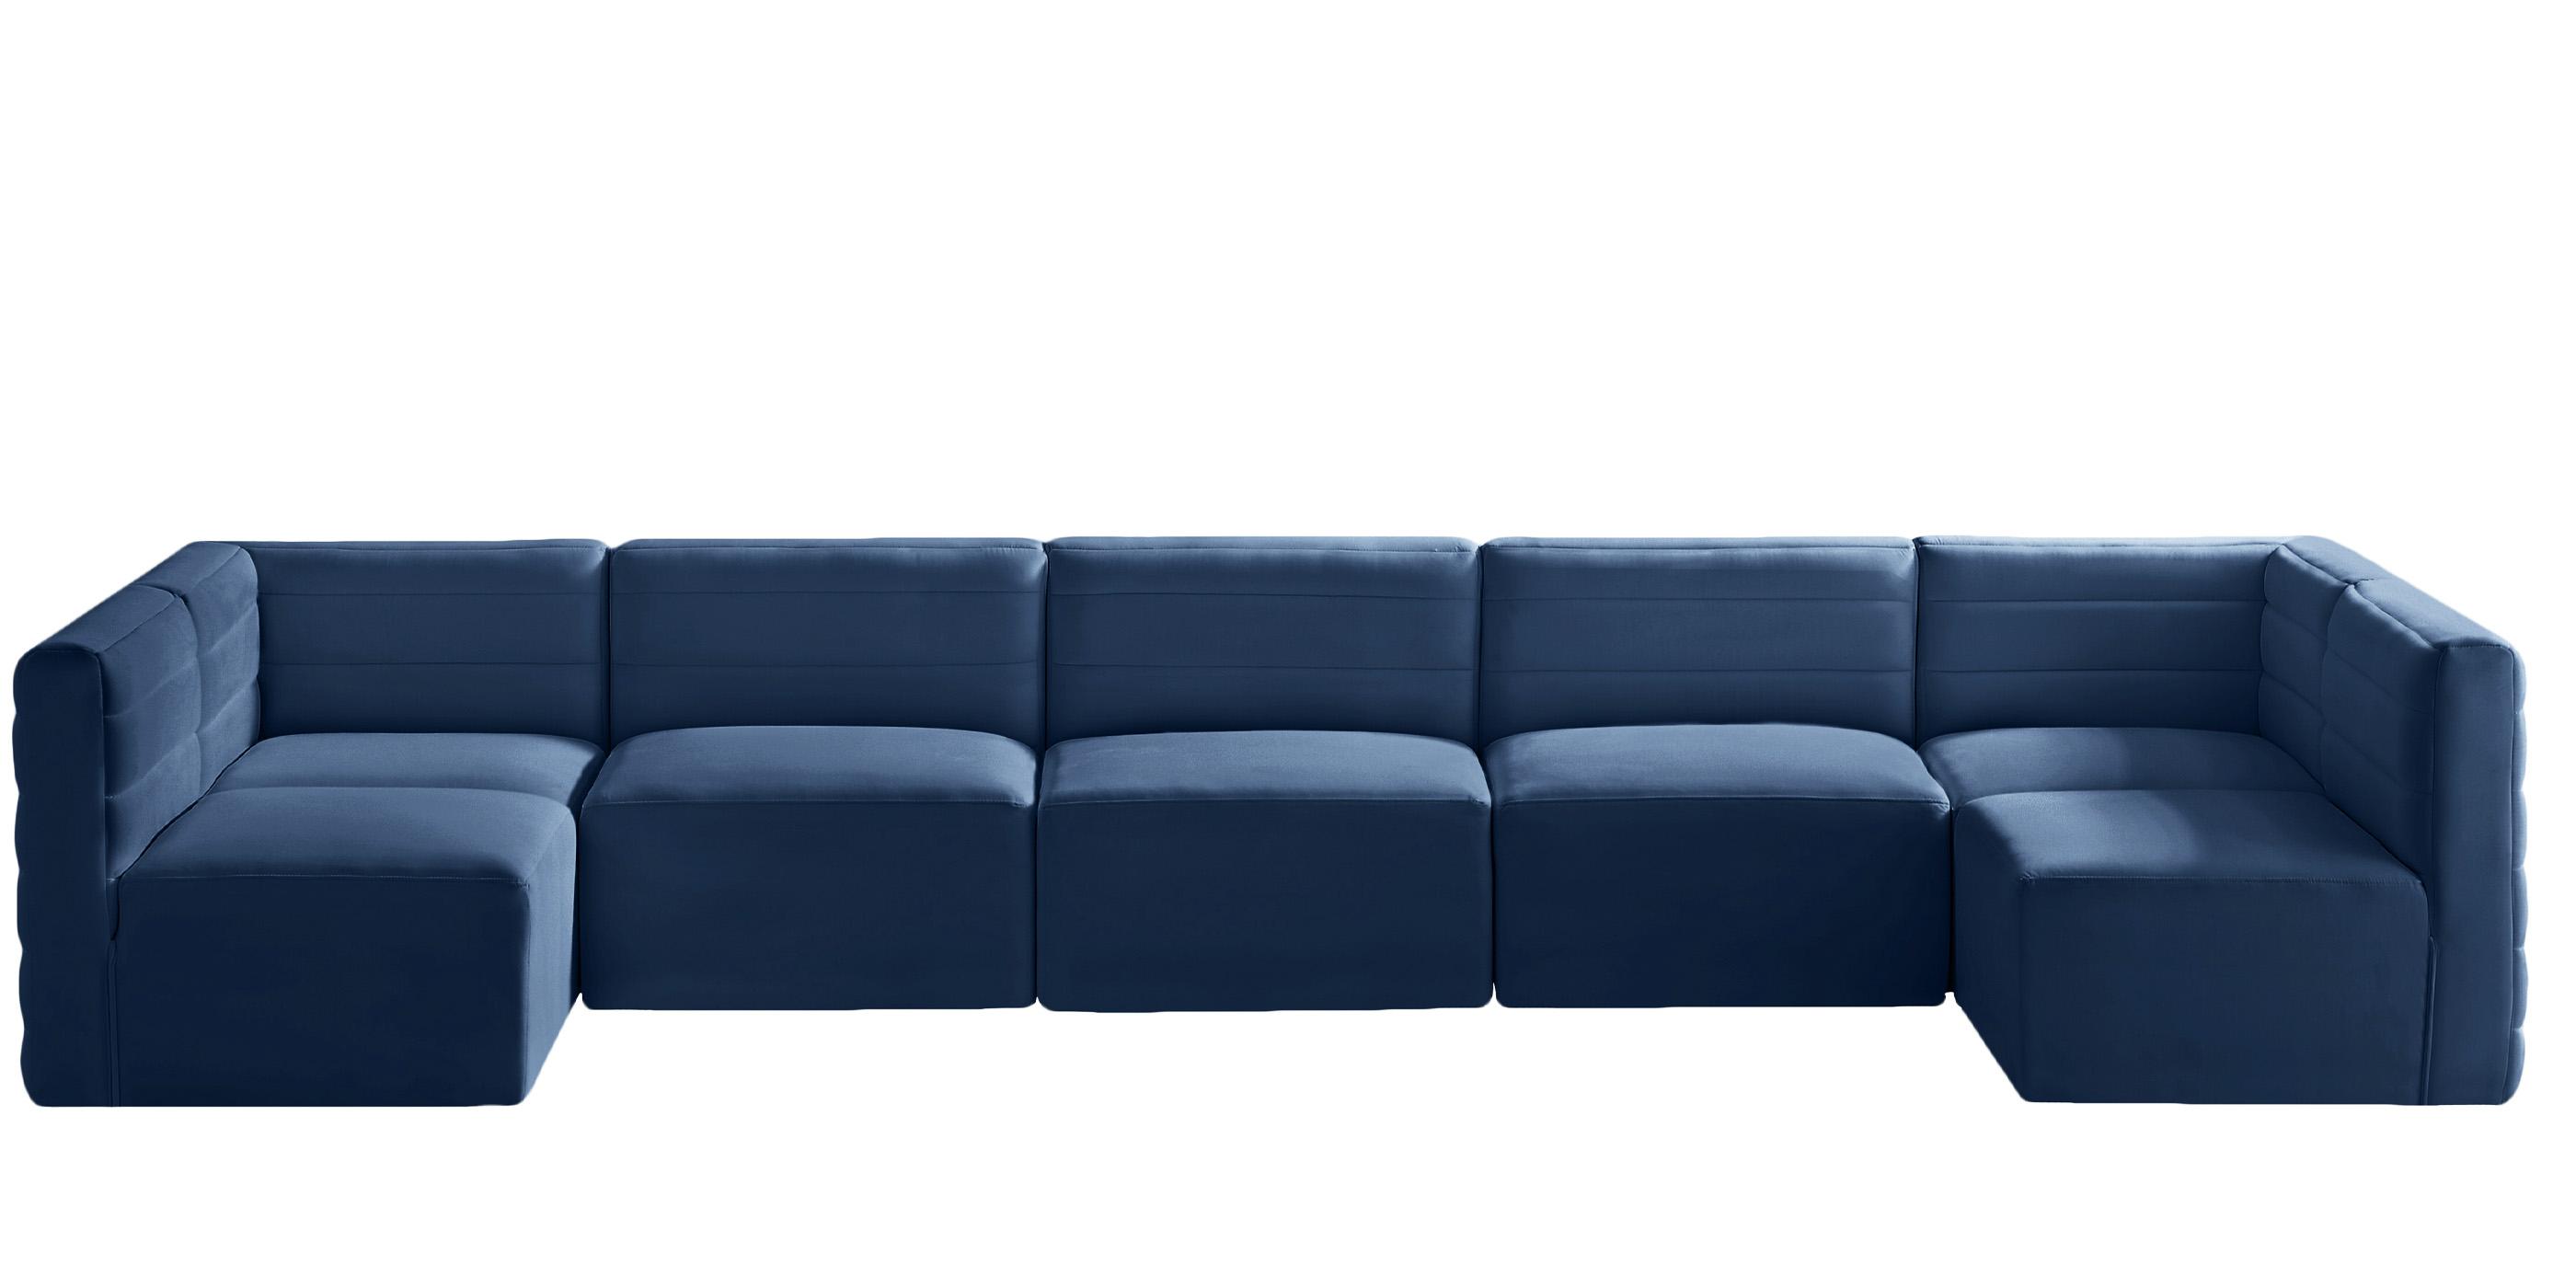 

    
677Navy-Sec7B Meridian Furniture Modular Sectional Sofa
